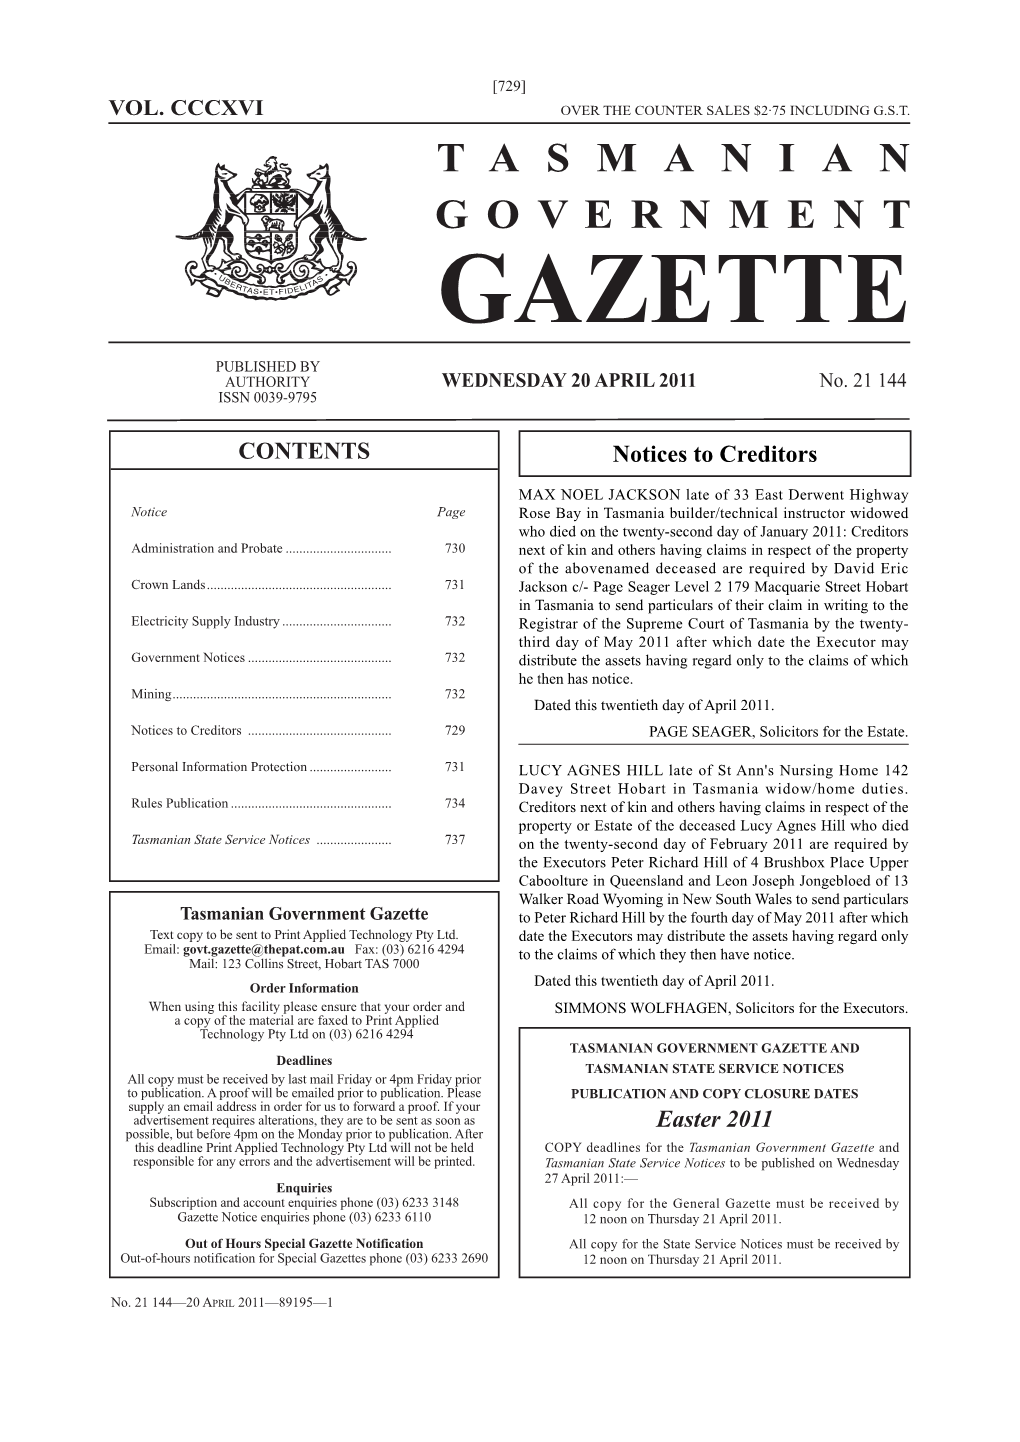 Gazette 21144